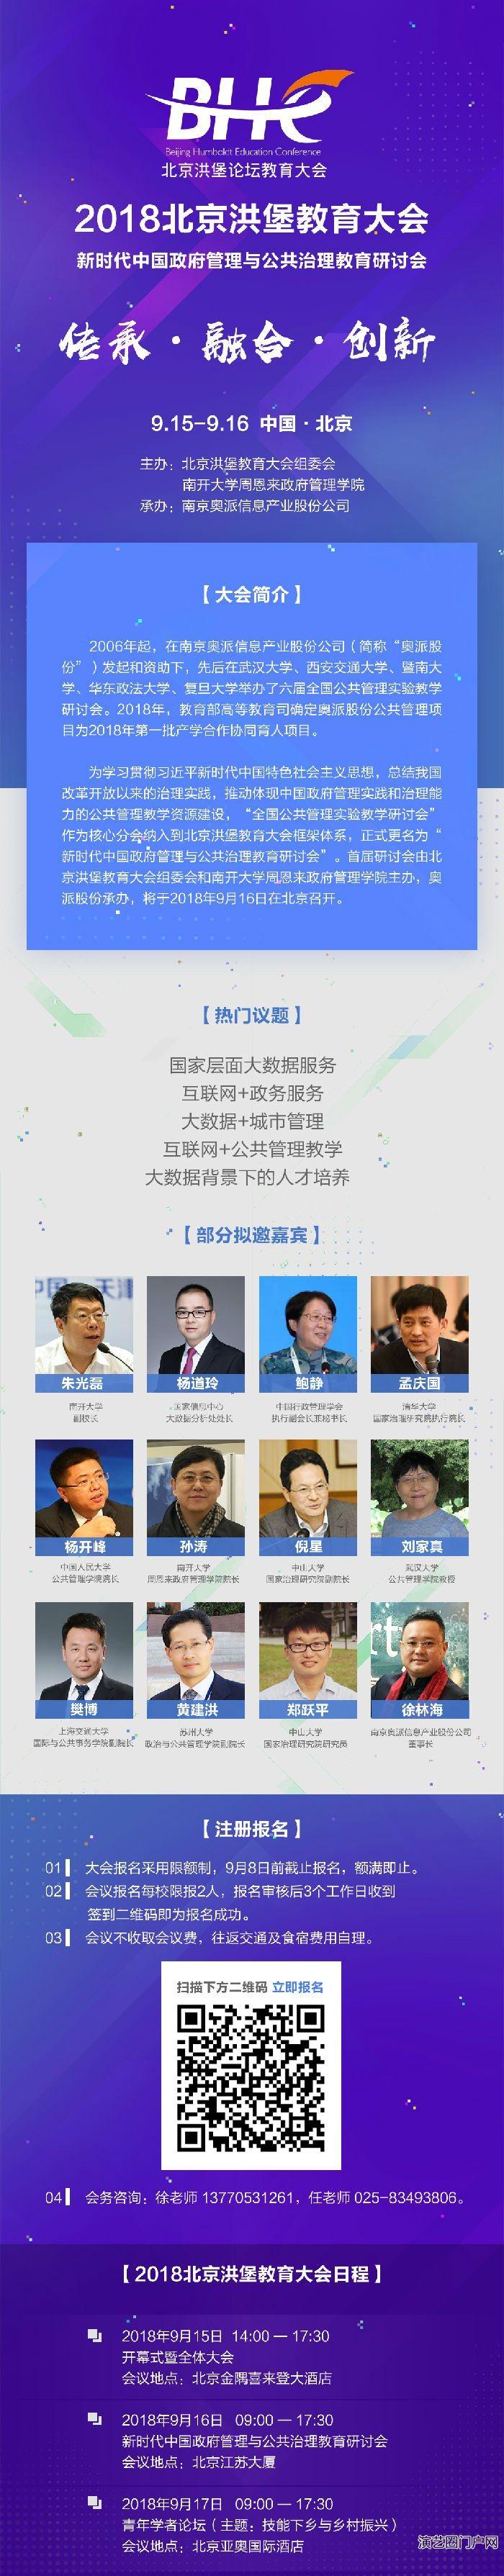 北京洪堡教育大会并同期举办数字经济与新商科人才培养